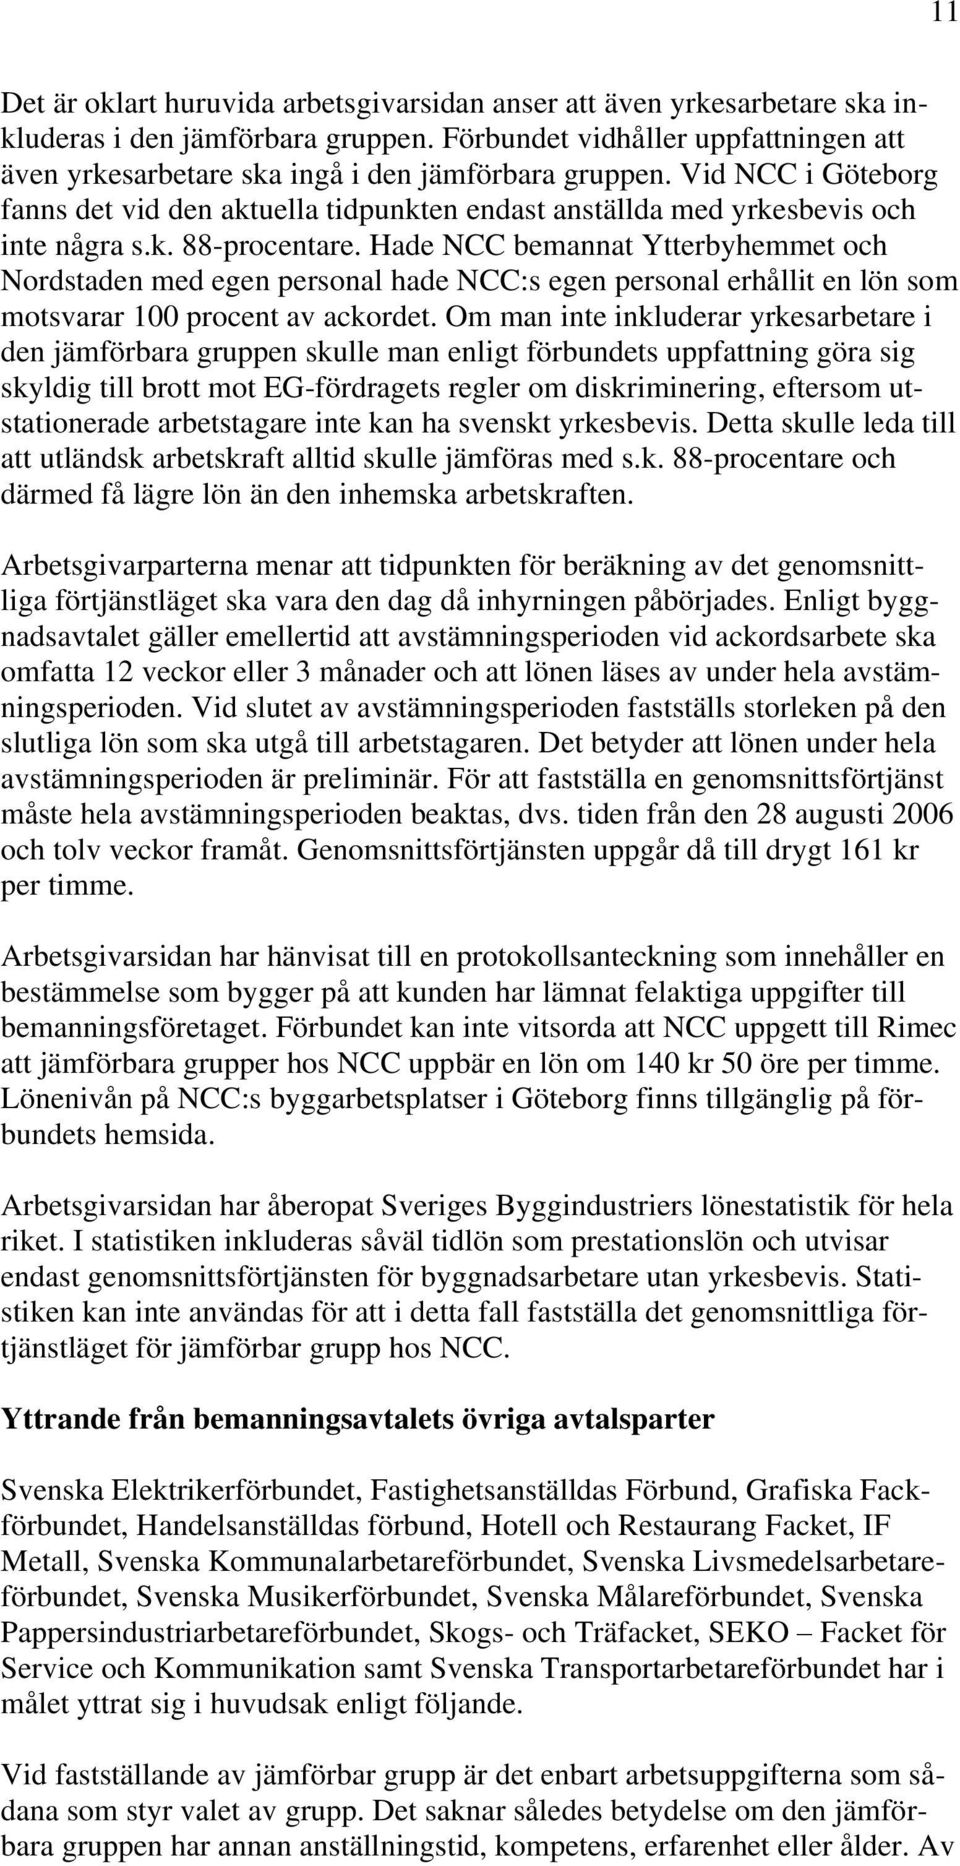 Hade NCC bemannat Ytterbyhemmet och Nordstaden med egen personal hade NCC:s egen personal erhållit en lön som motsvarar 100 procent av ackordet.